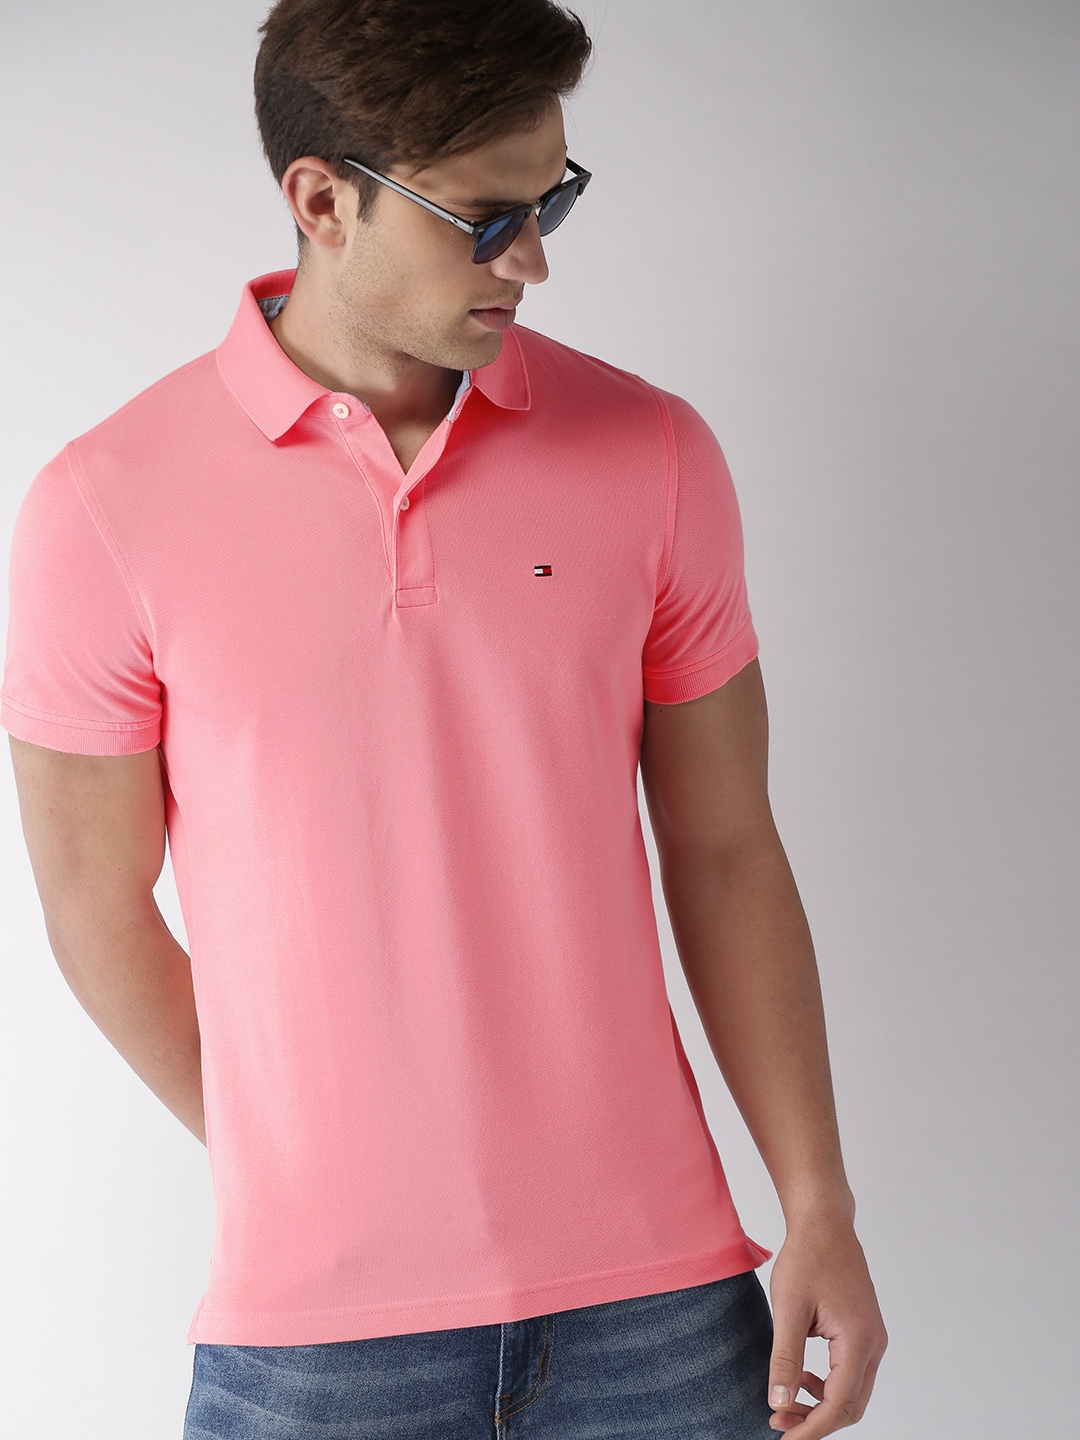 Australsk person konkurs affældige Buy Tommy Hilfiger Men Pink Solid Polo T Shirt - Tshirts for Men 8796691 |  Myntra